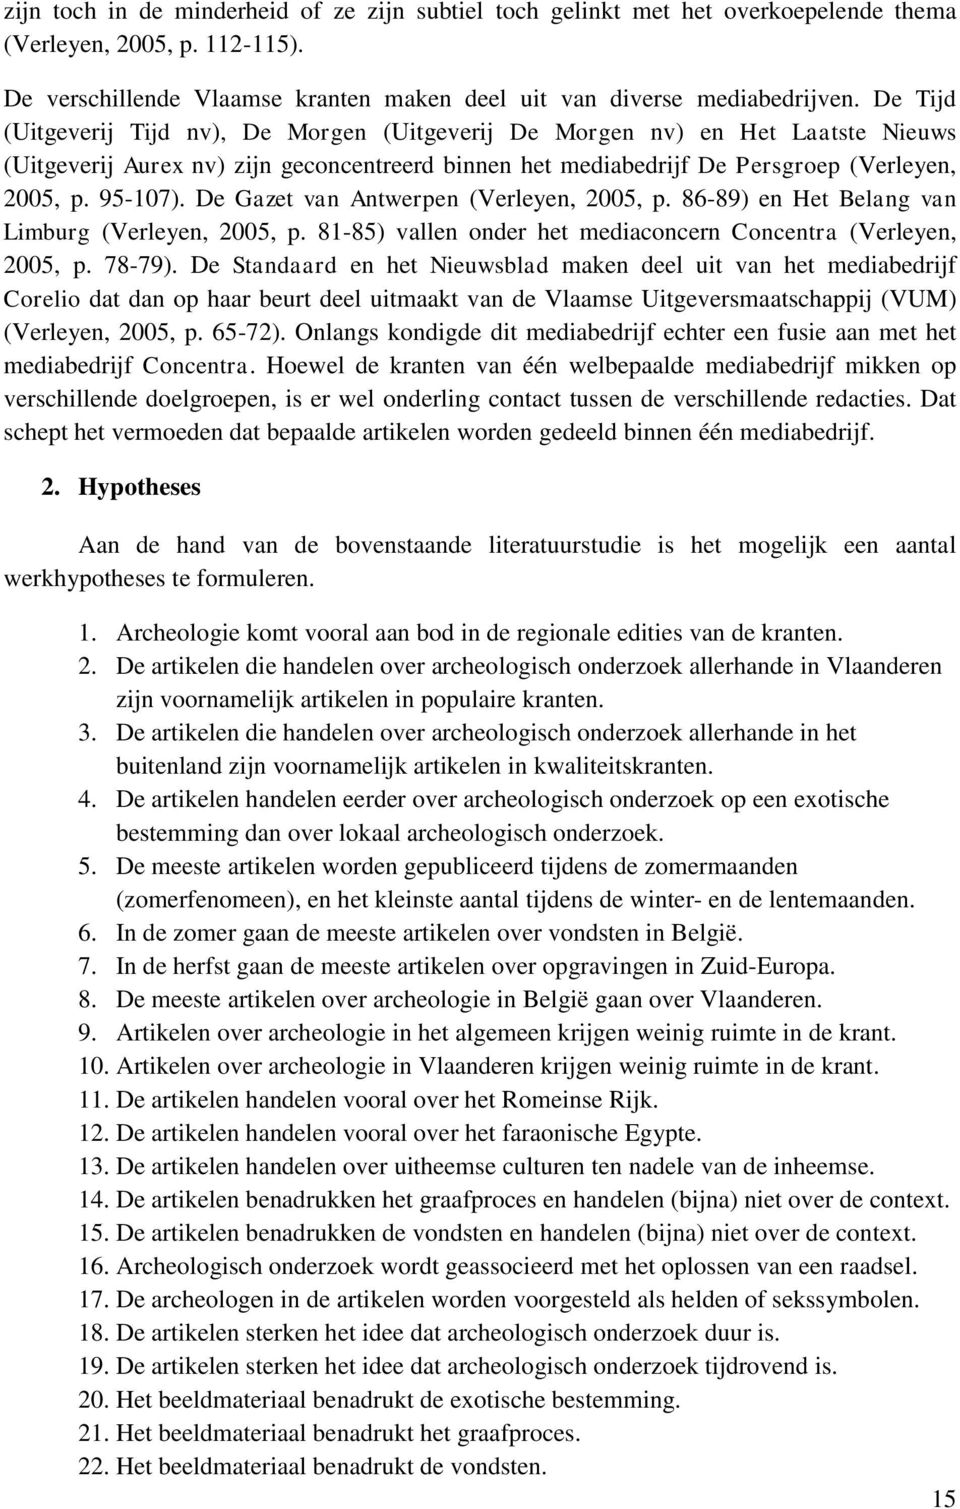 De Gazet van Antwerpen (Verleyen, 2005, p. 86-89) en Het Belang van Limburg (Verleyen, 2005, p. 81-85) vallen onder het mediaconcern Concentra (Verleyen, 2005, p. 78-79).